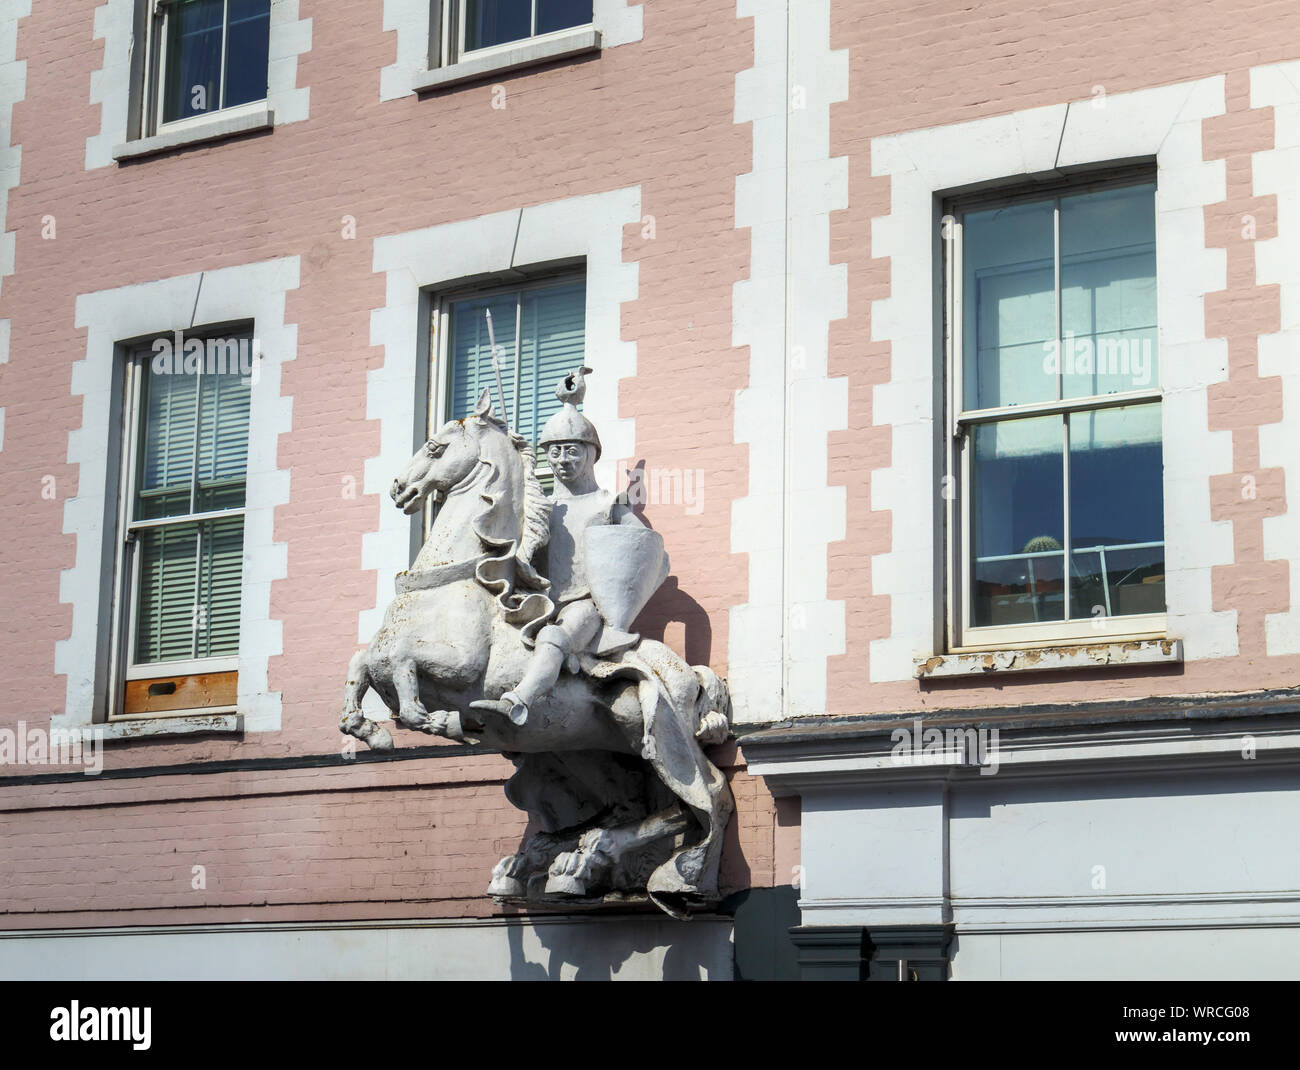 Statue eines montierten Ritter auf einem Pferd auf dem ehemaligen White Horse Hotel in High Stree, High Street, Guildford, Surrey, Südosten, England, Grossbritannien Stockfoto